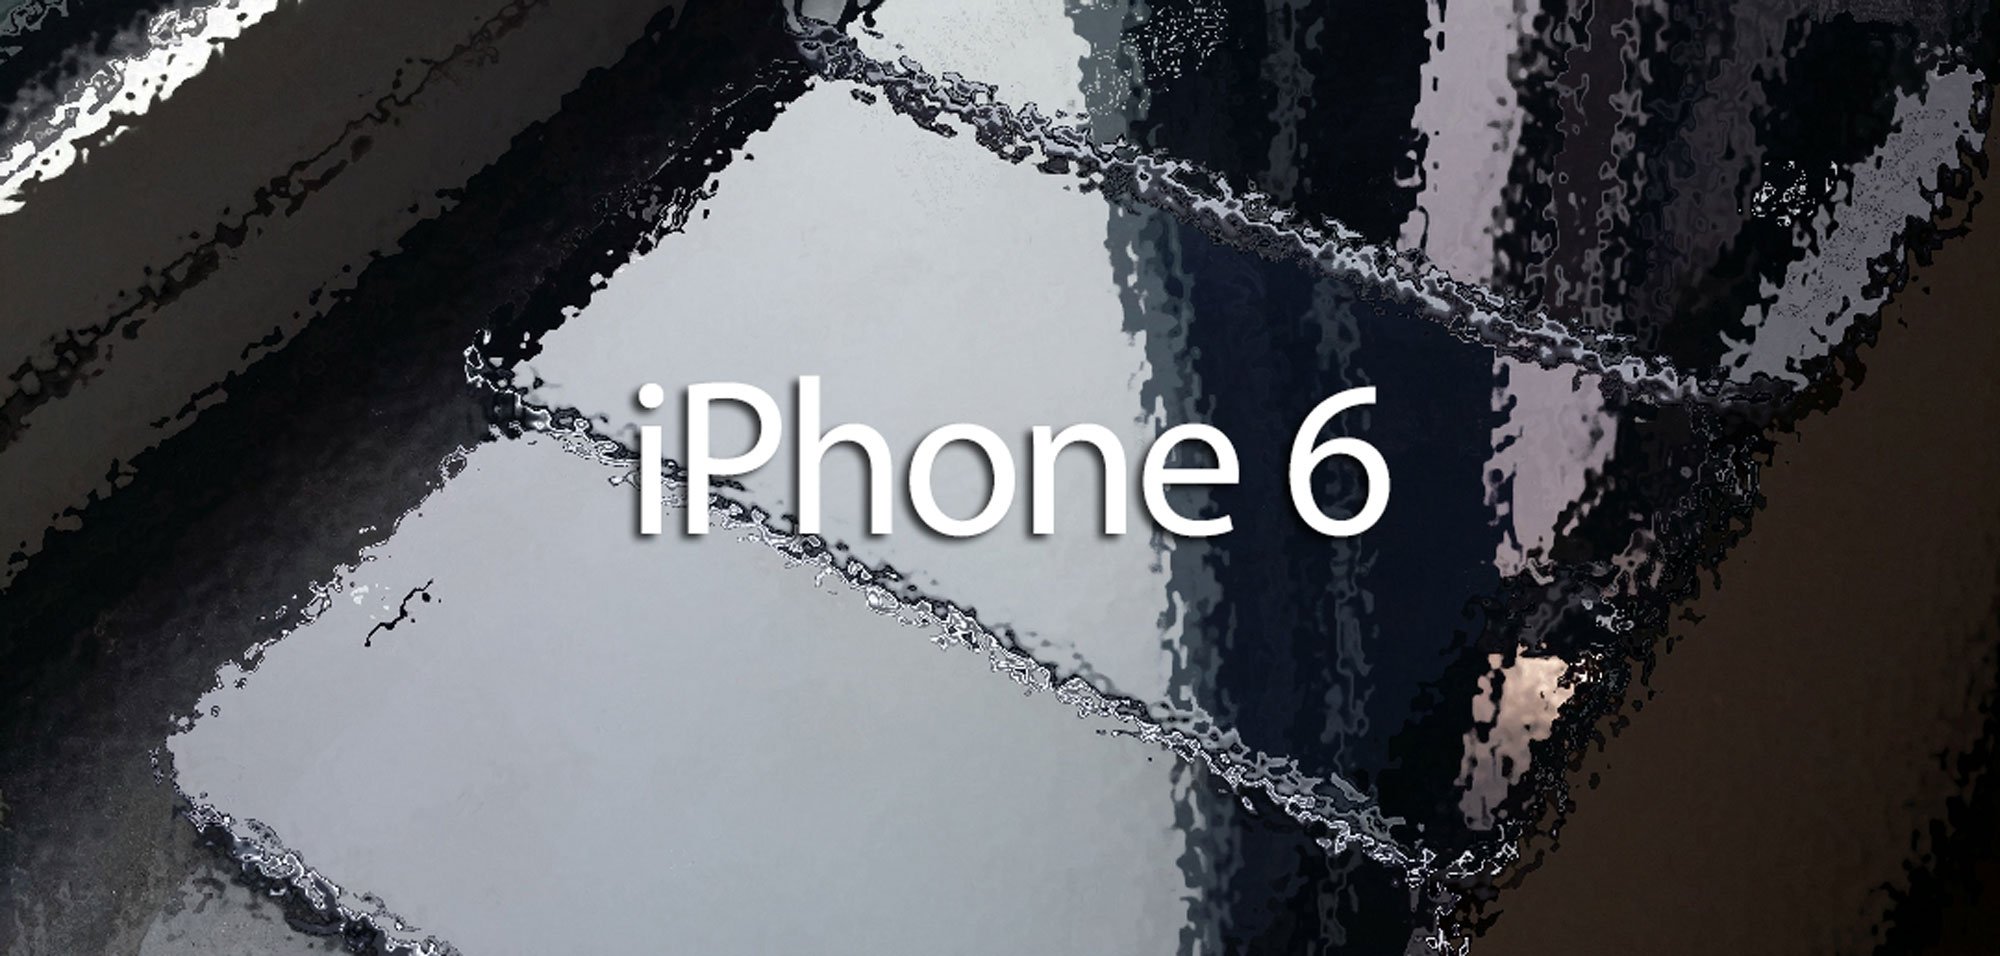 128 GB iPhone, iPhone 6 günstiger als iPhone 5s? 8